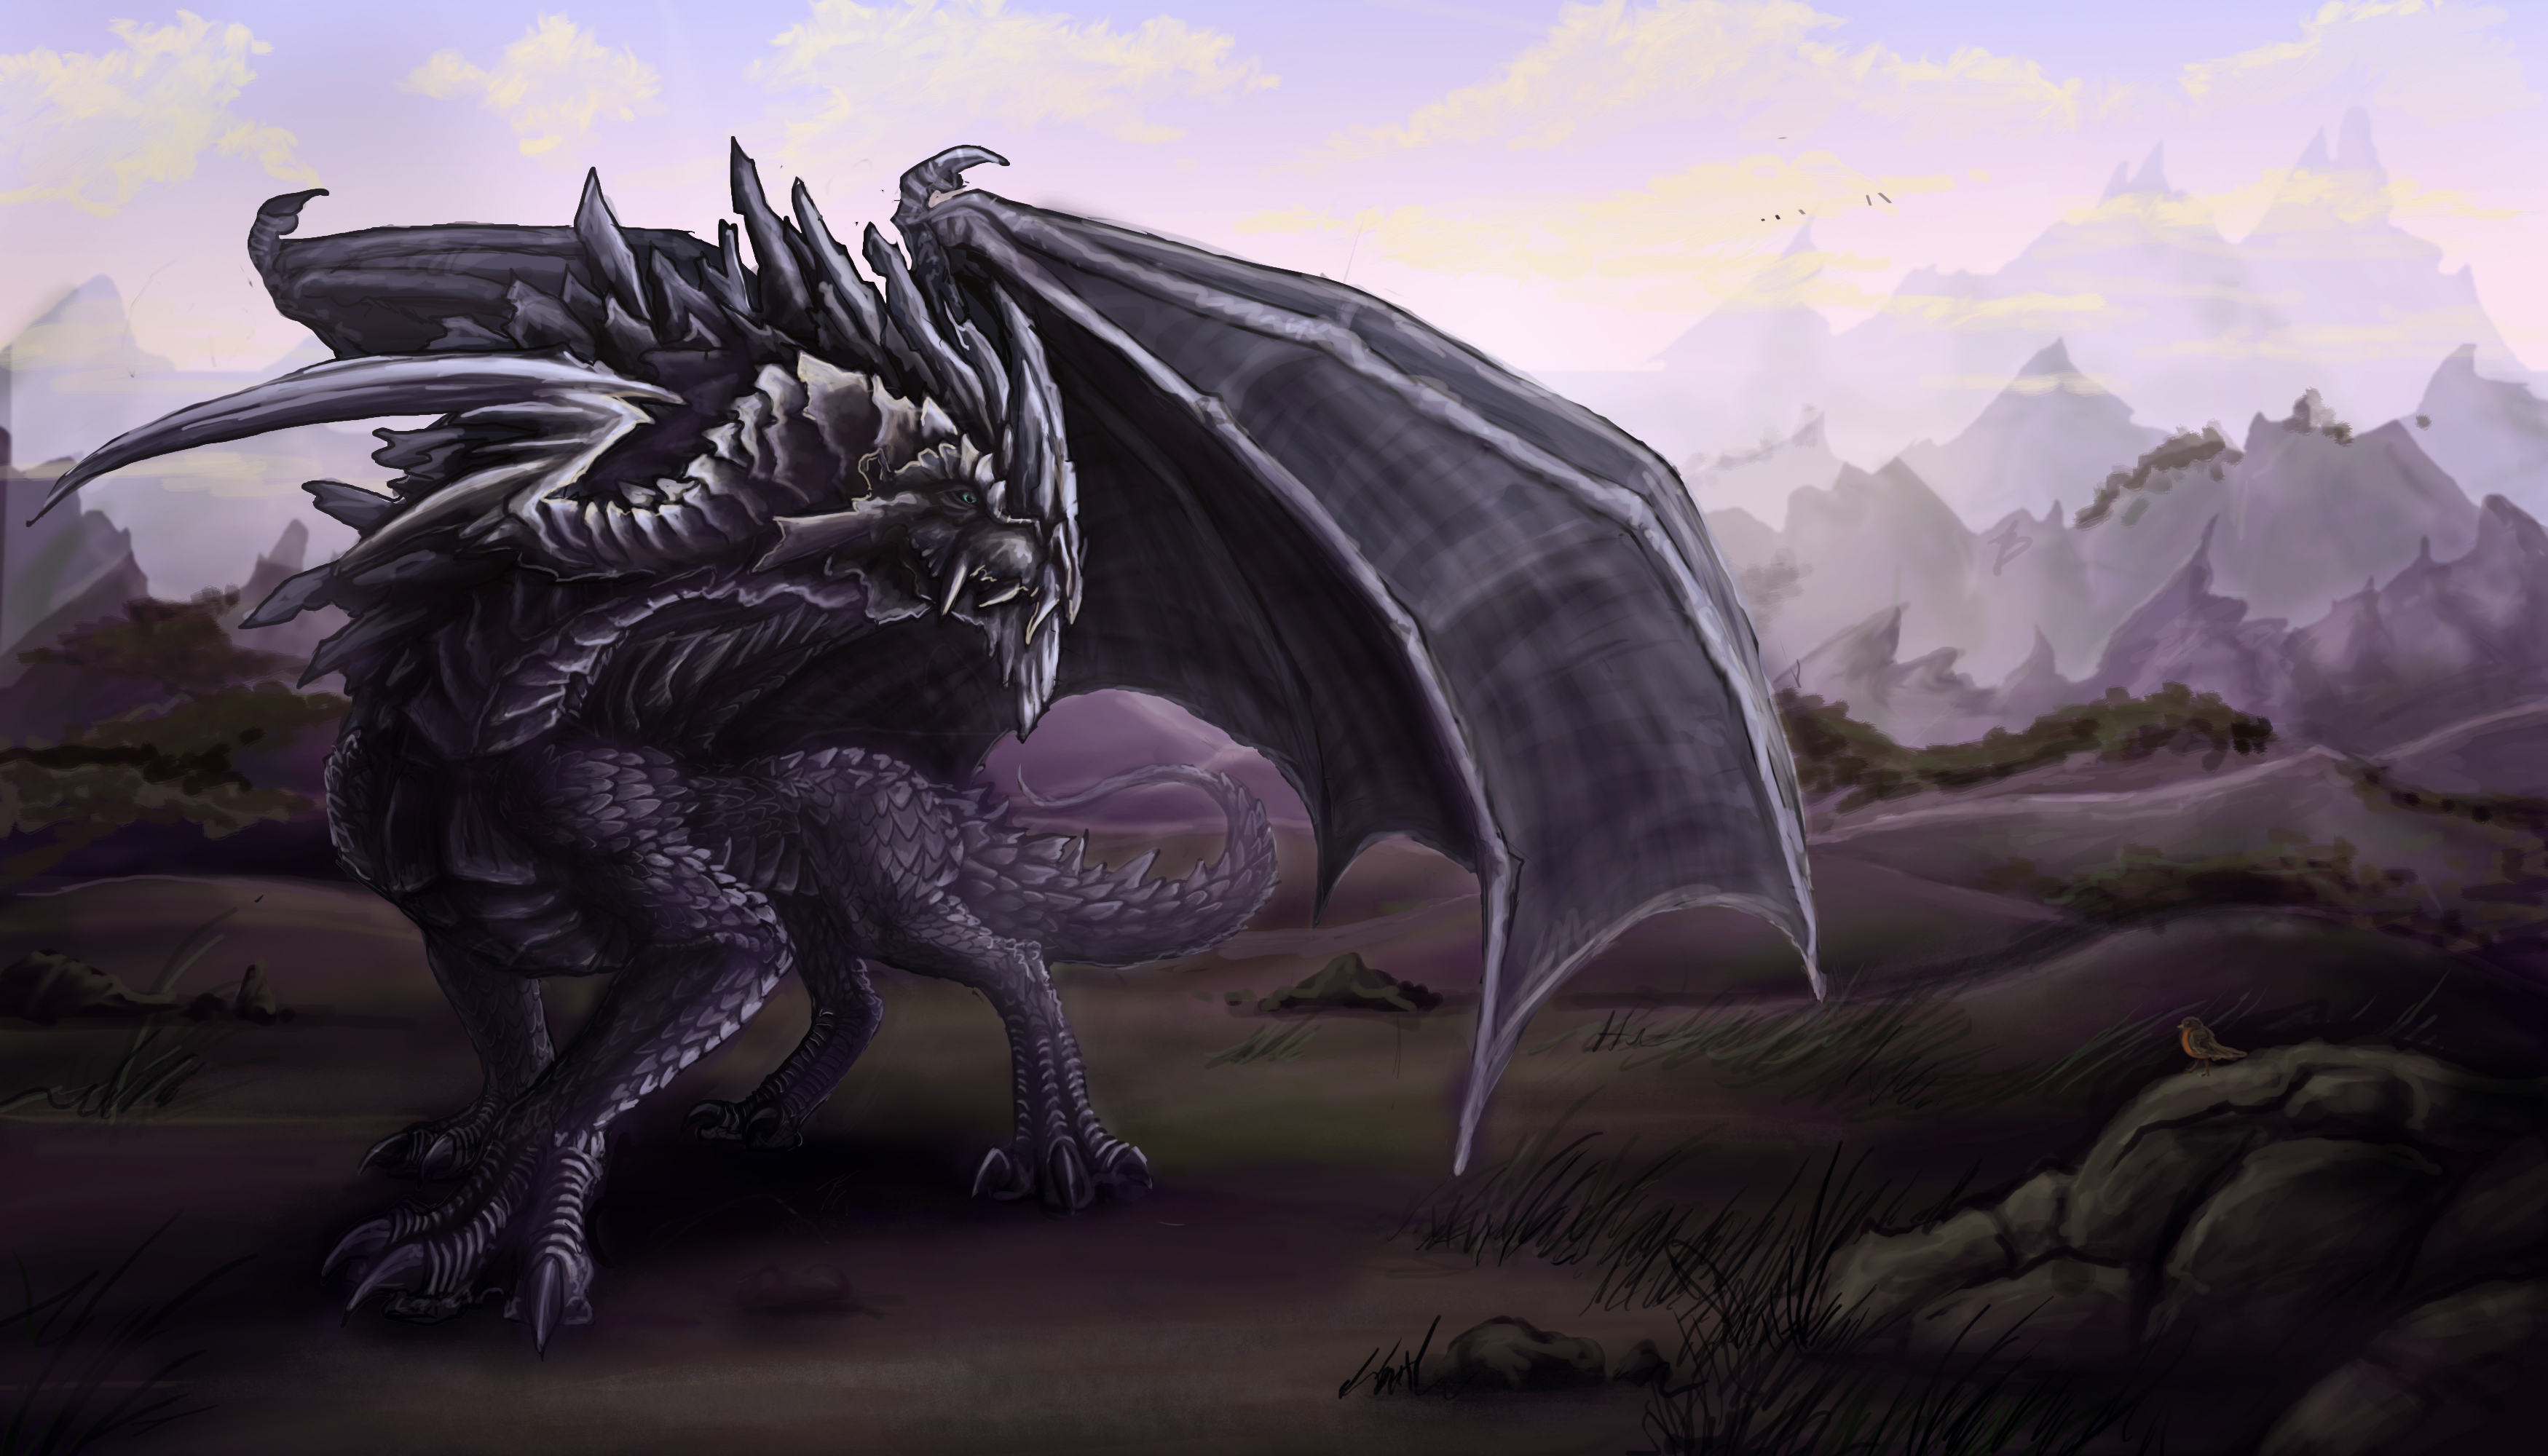 dragon noir fond d'écran hd,dragon,personnage fictif,oeuvre de cg,créature mythique,mythologie